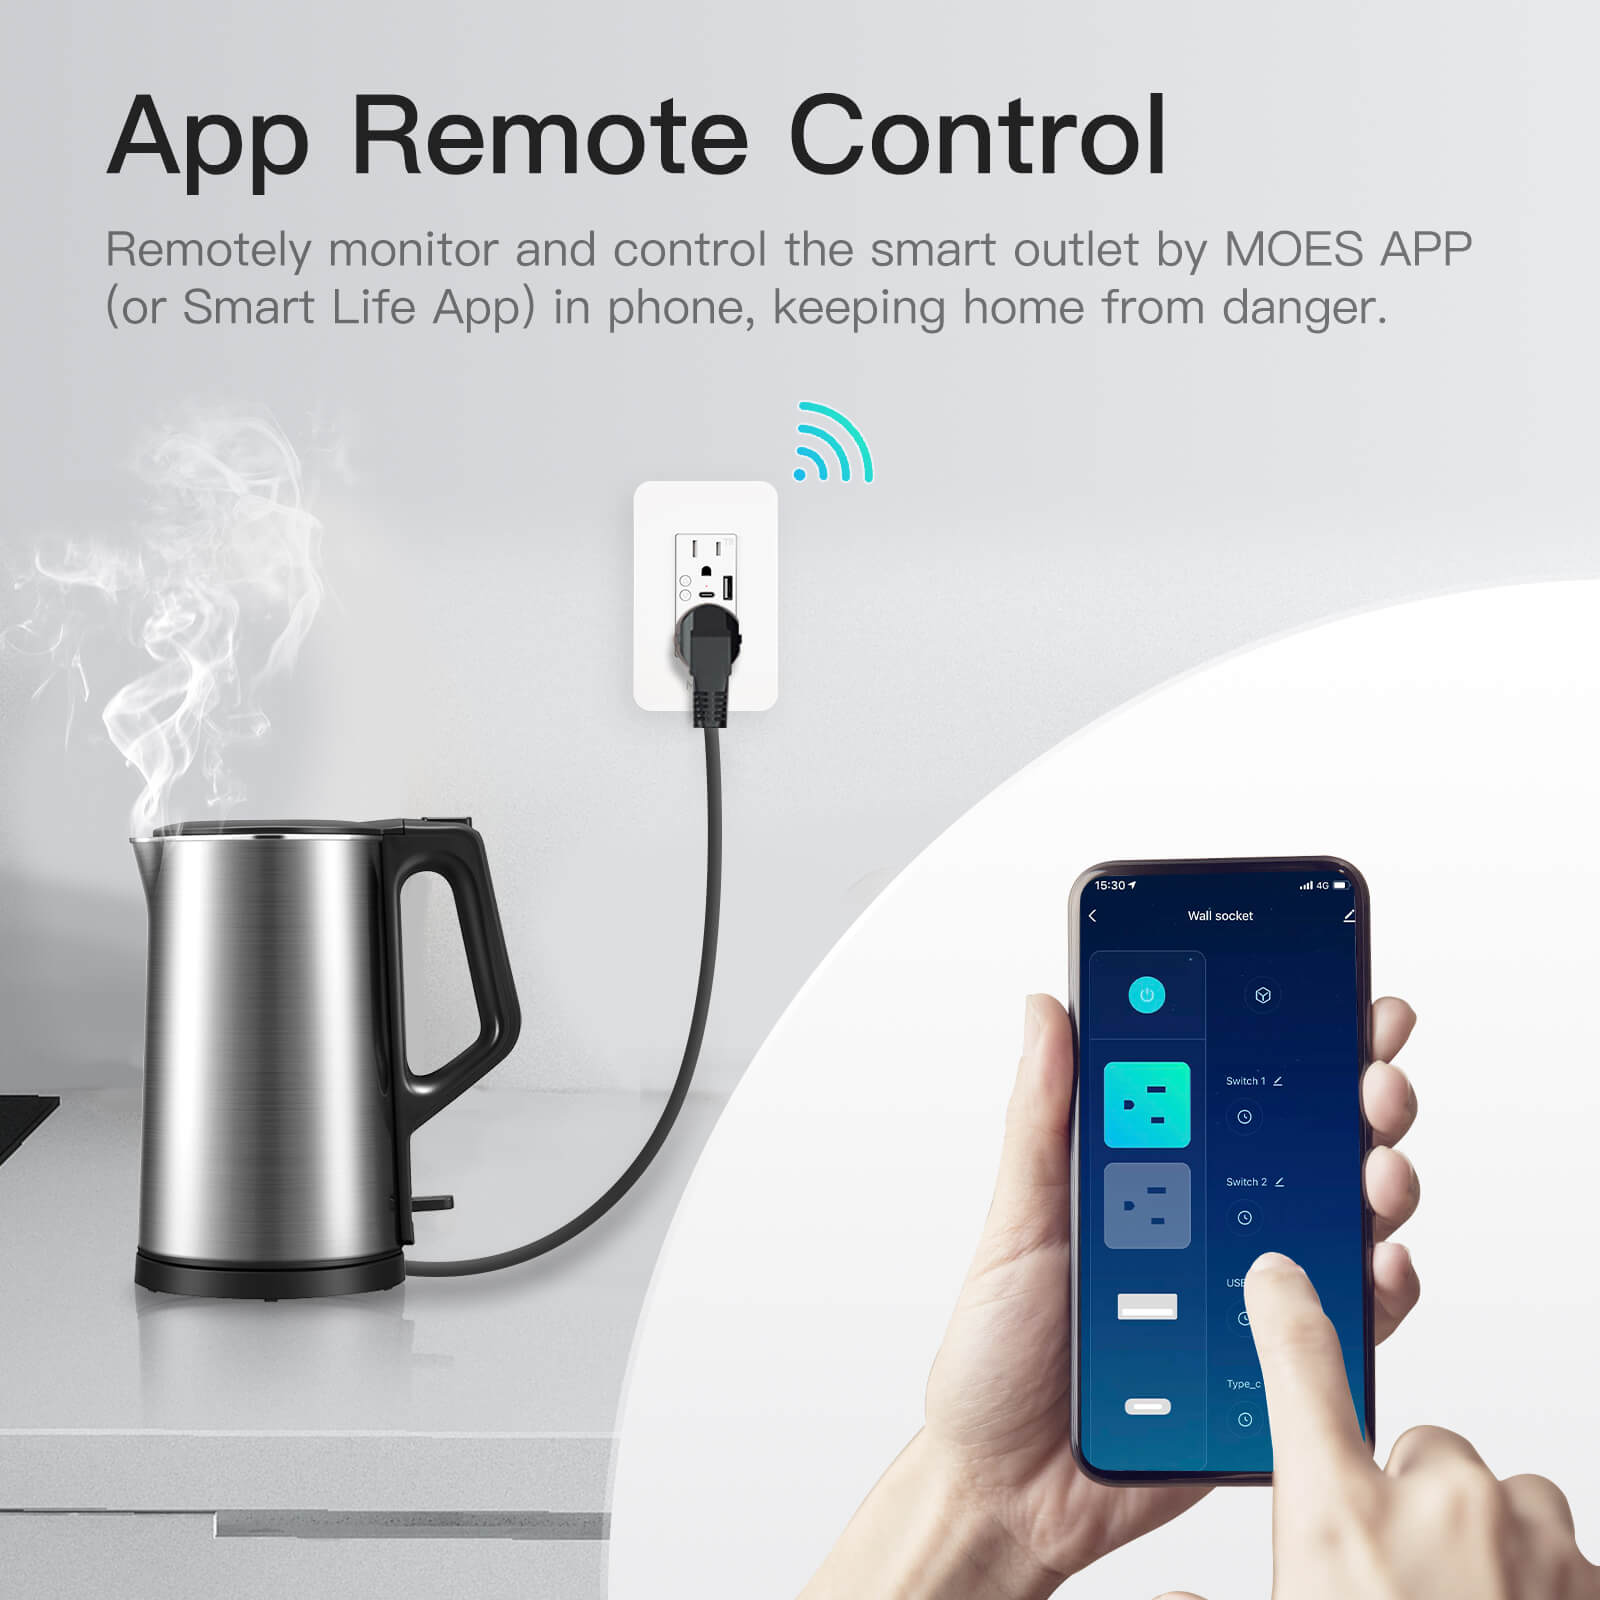 App Remote Control - MOES